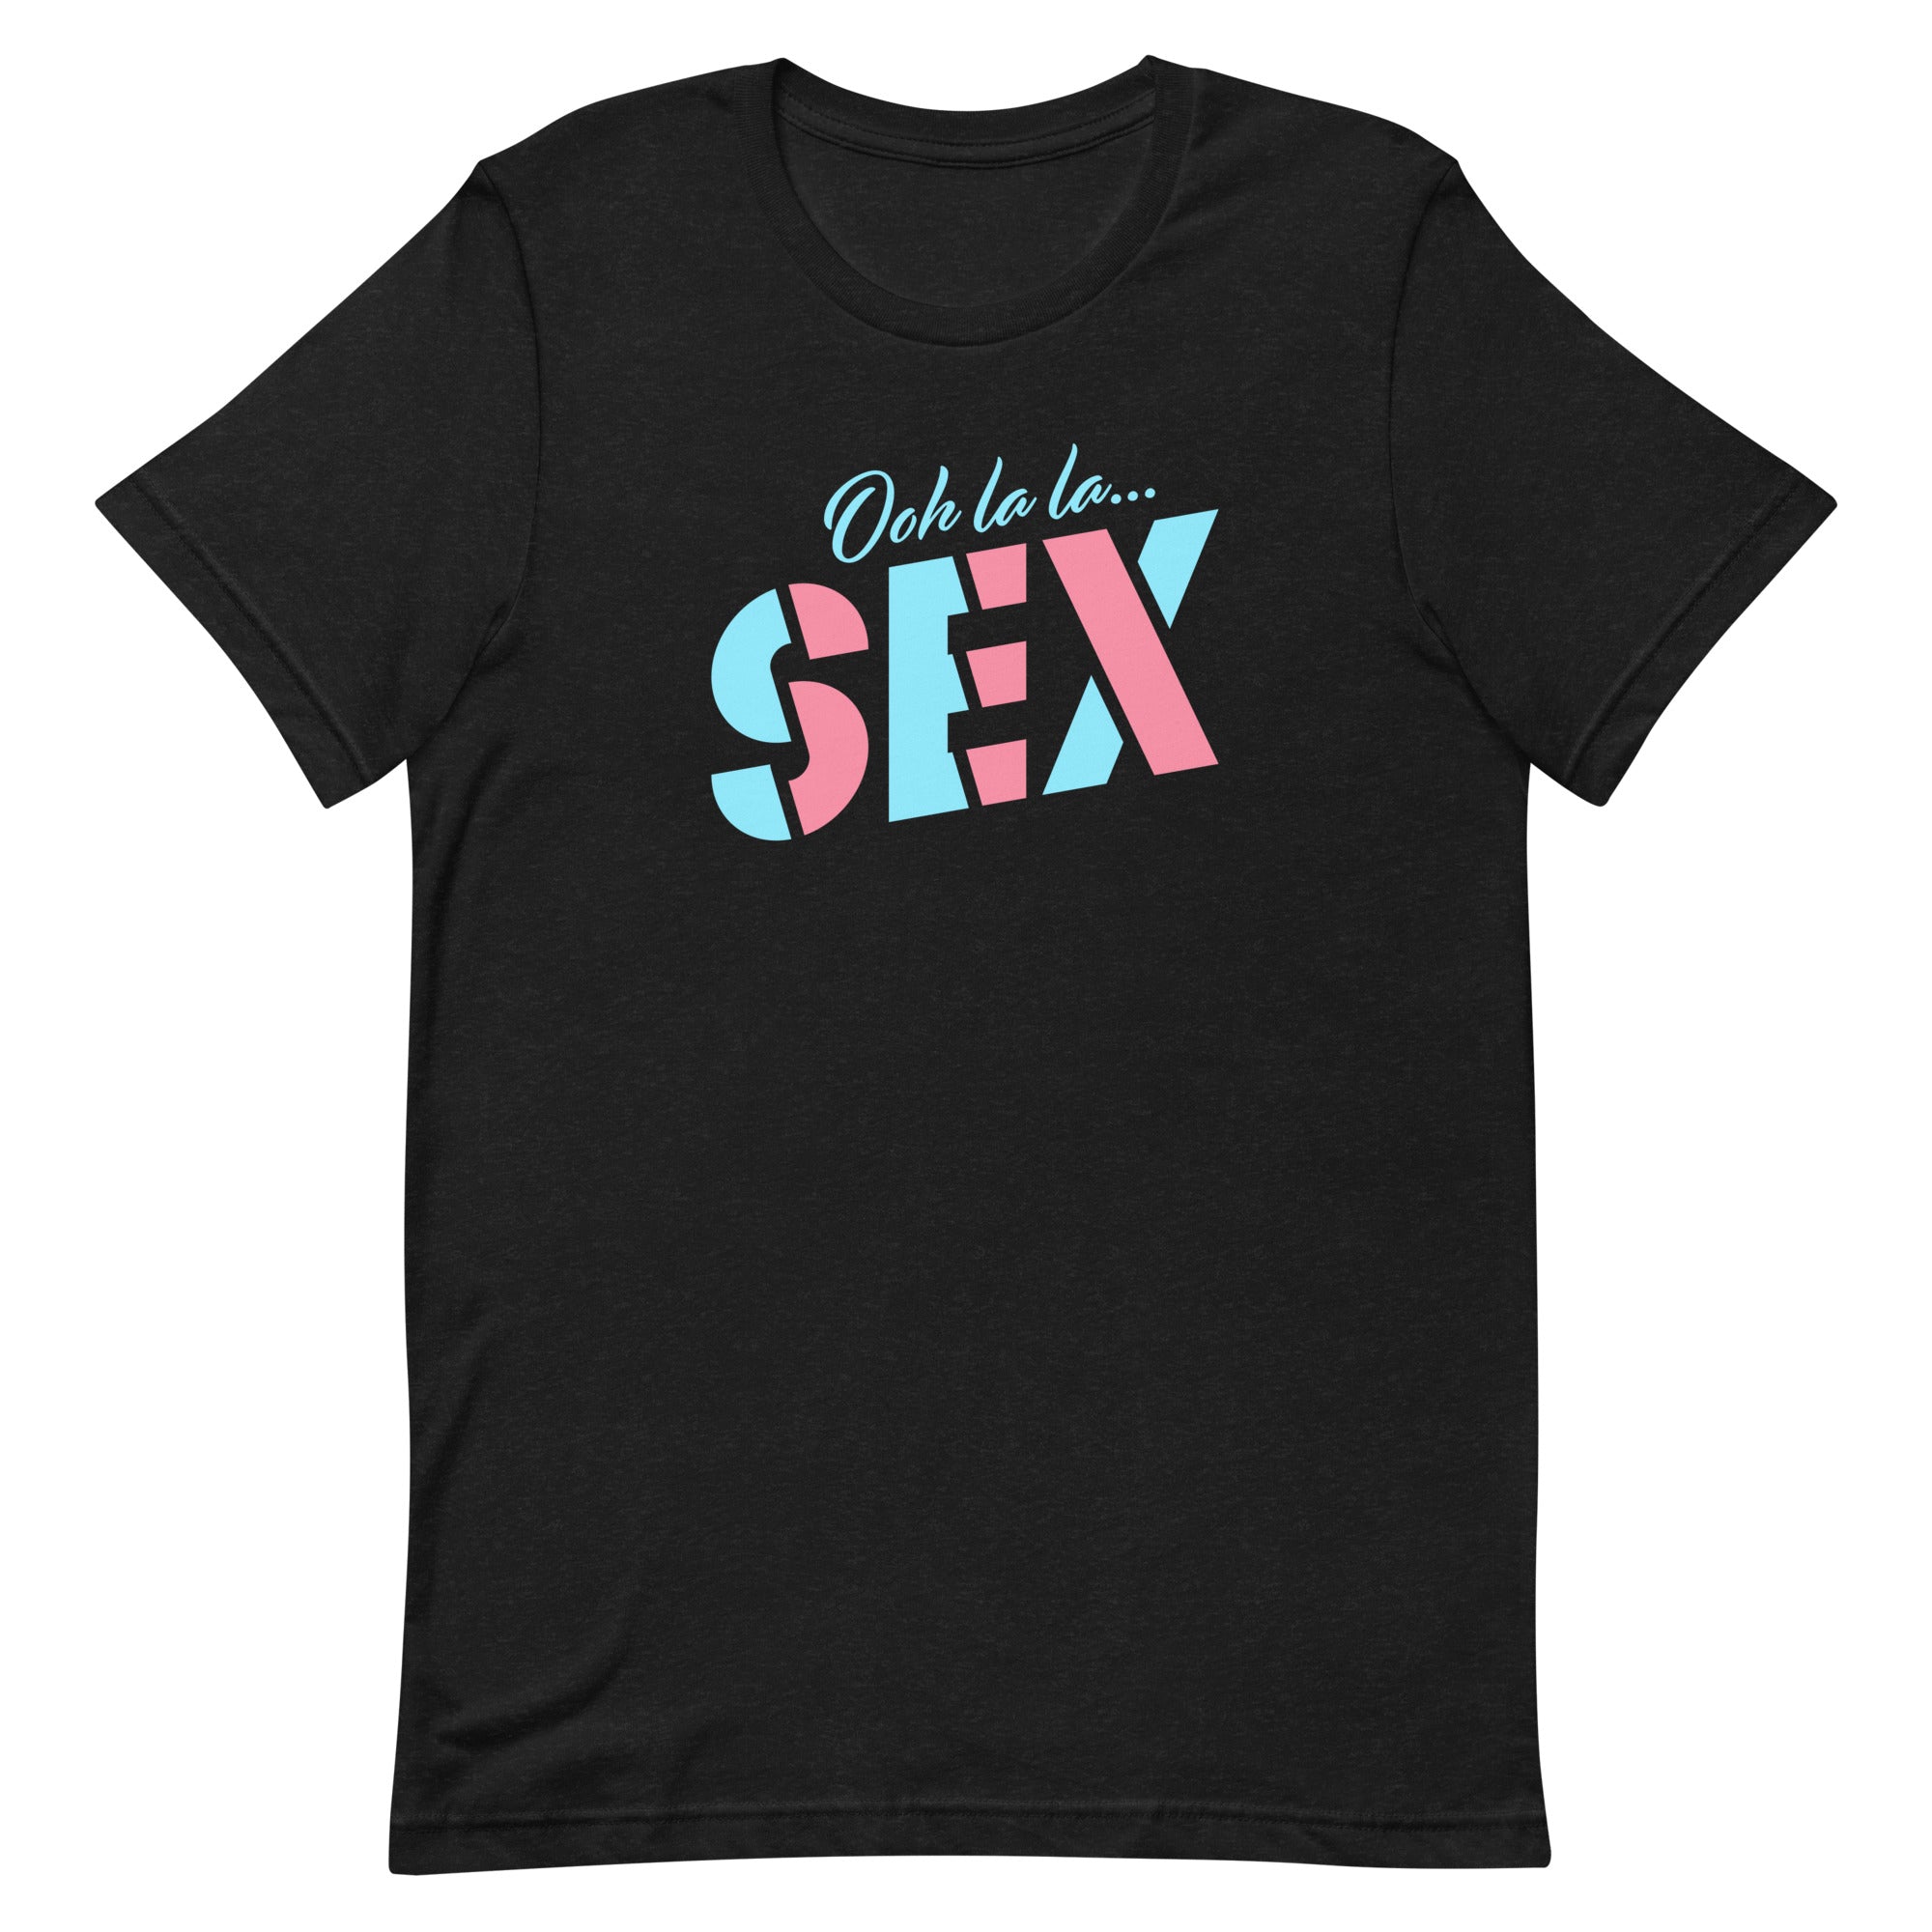 Comedy Bang Bang: Ooh La La...SEX T-shirt